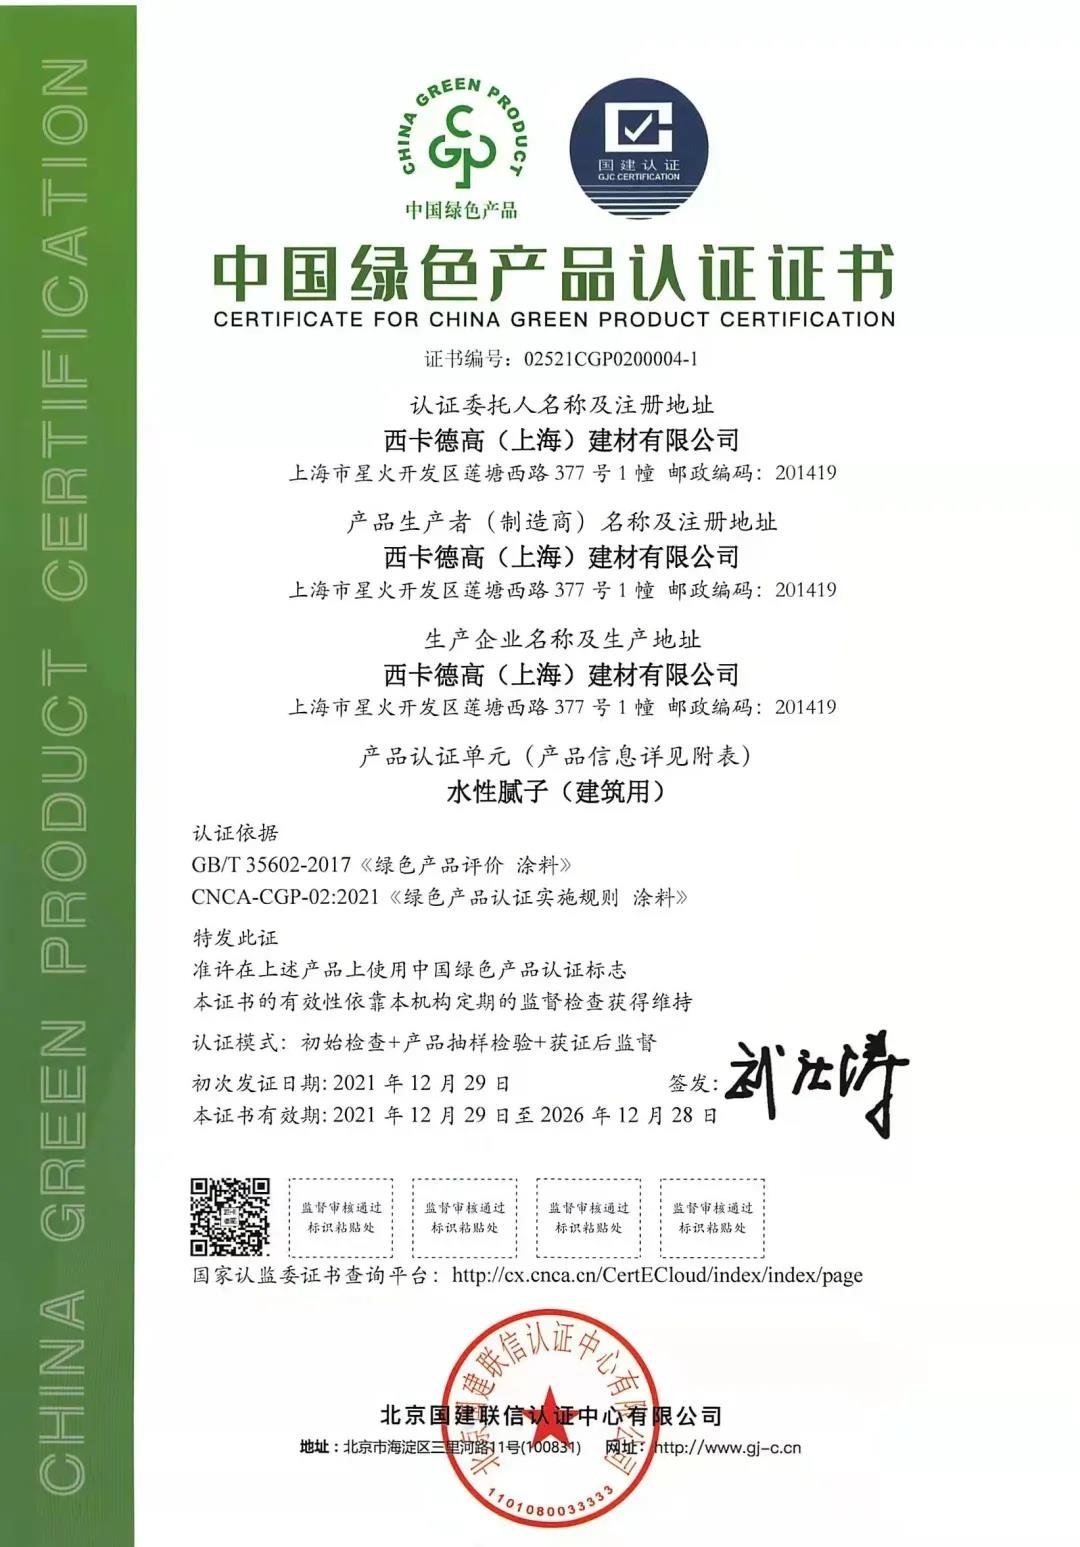 喜讯西卡德高旗下第一批工厂荣获中国绿色产品证书